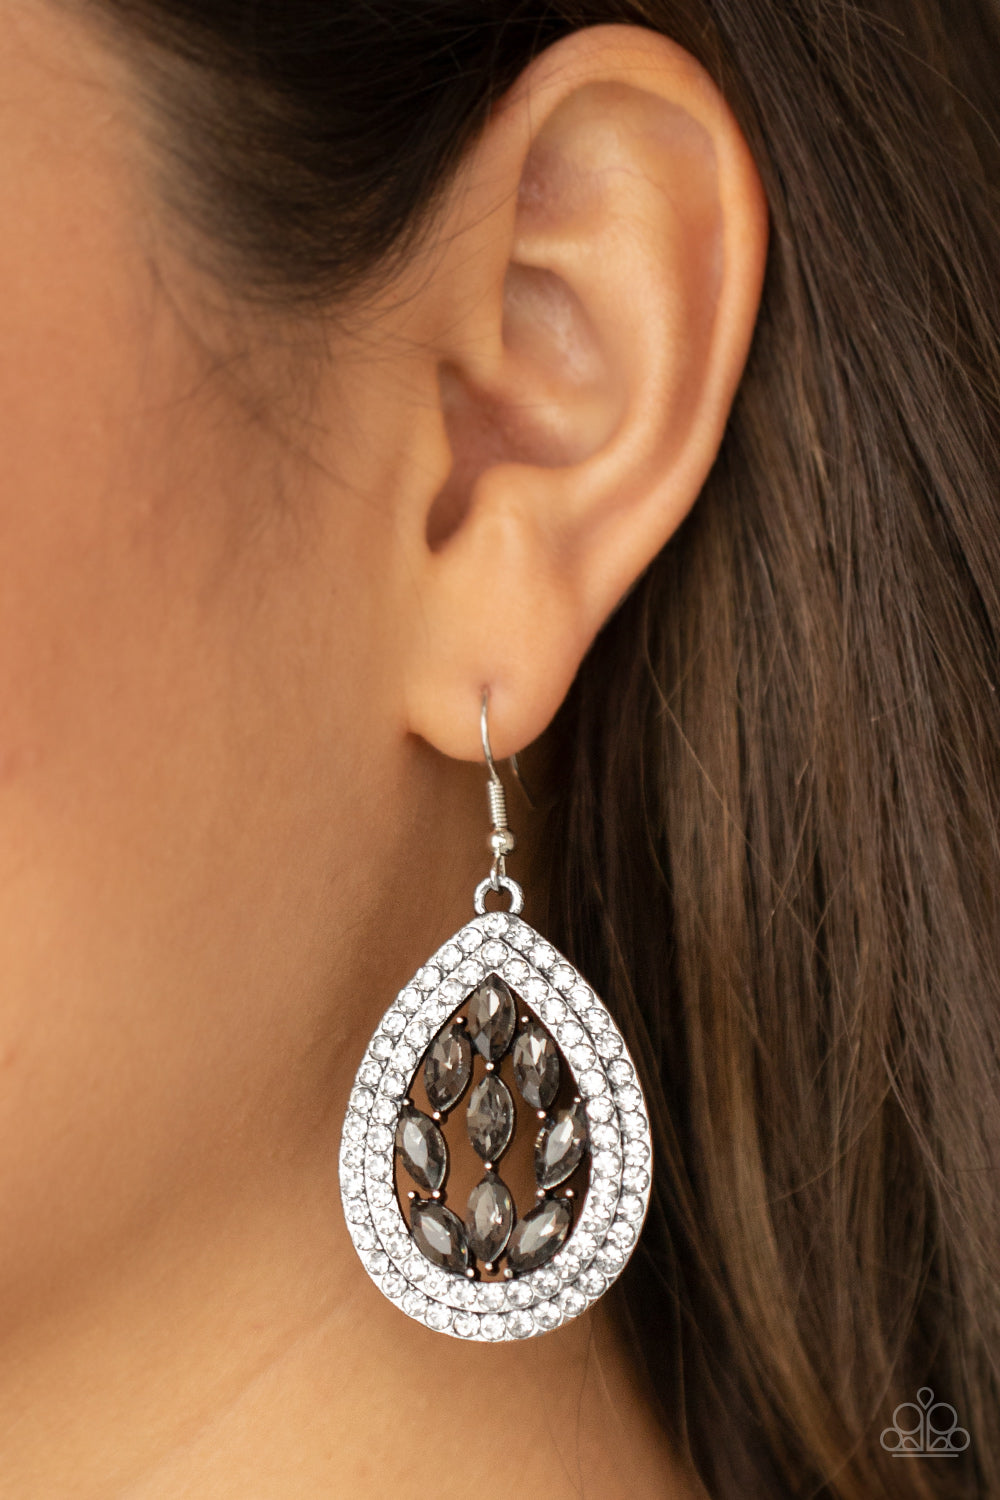 Encased Elegance Silver Earrings - Daria's Blings N Things